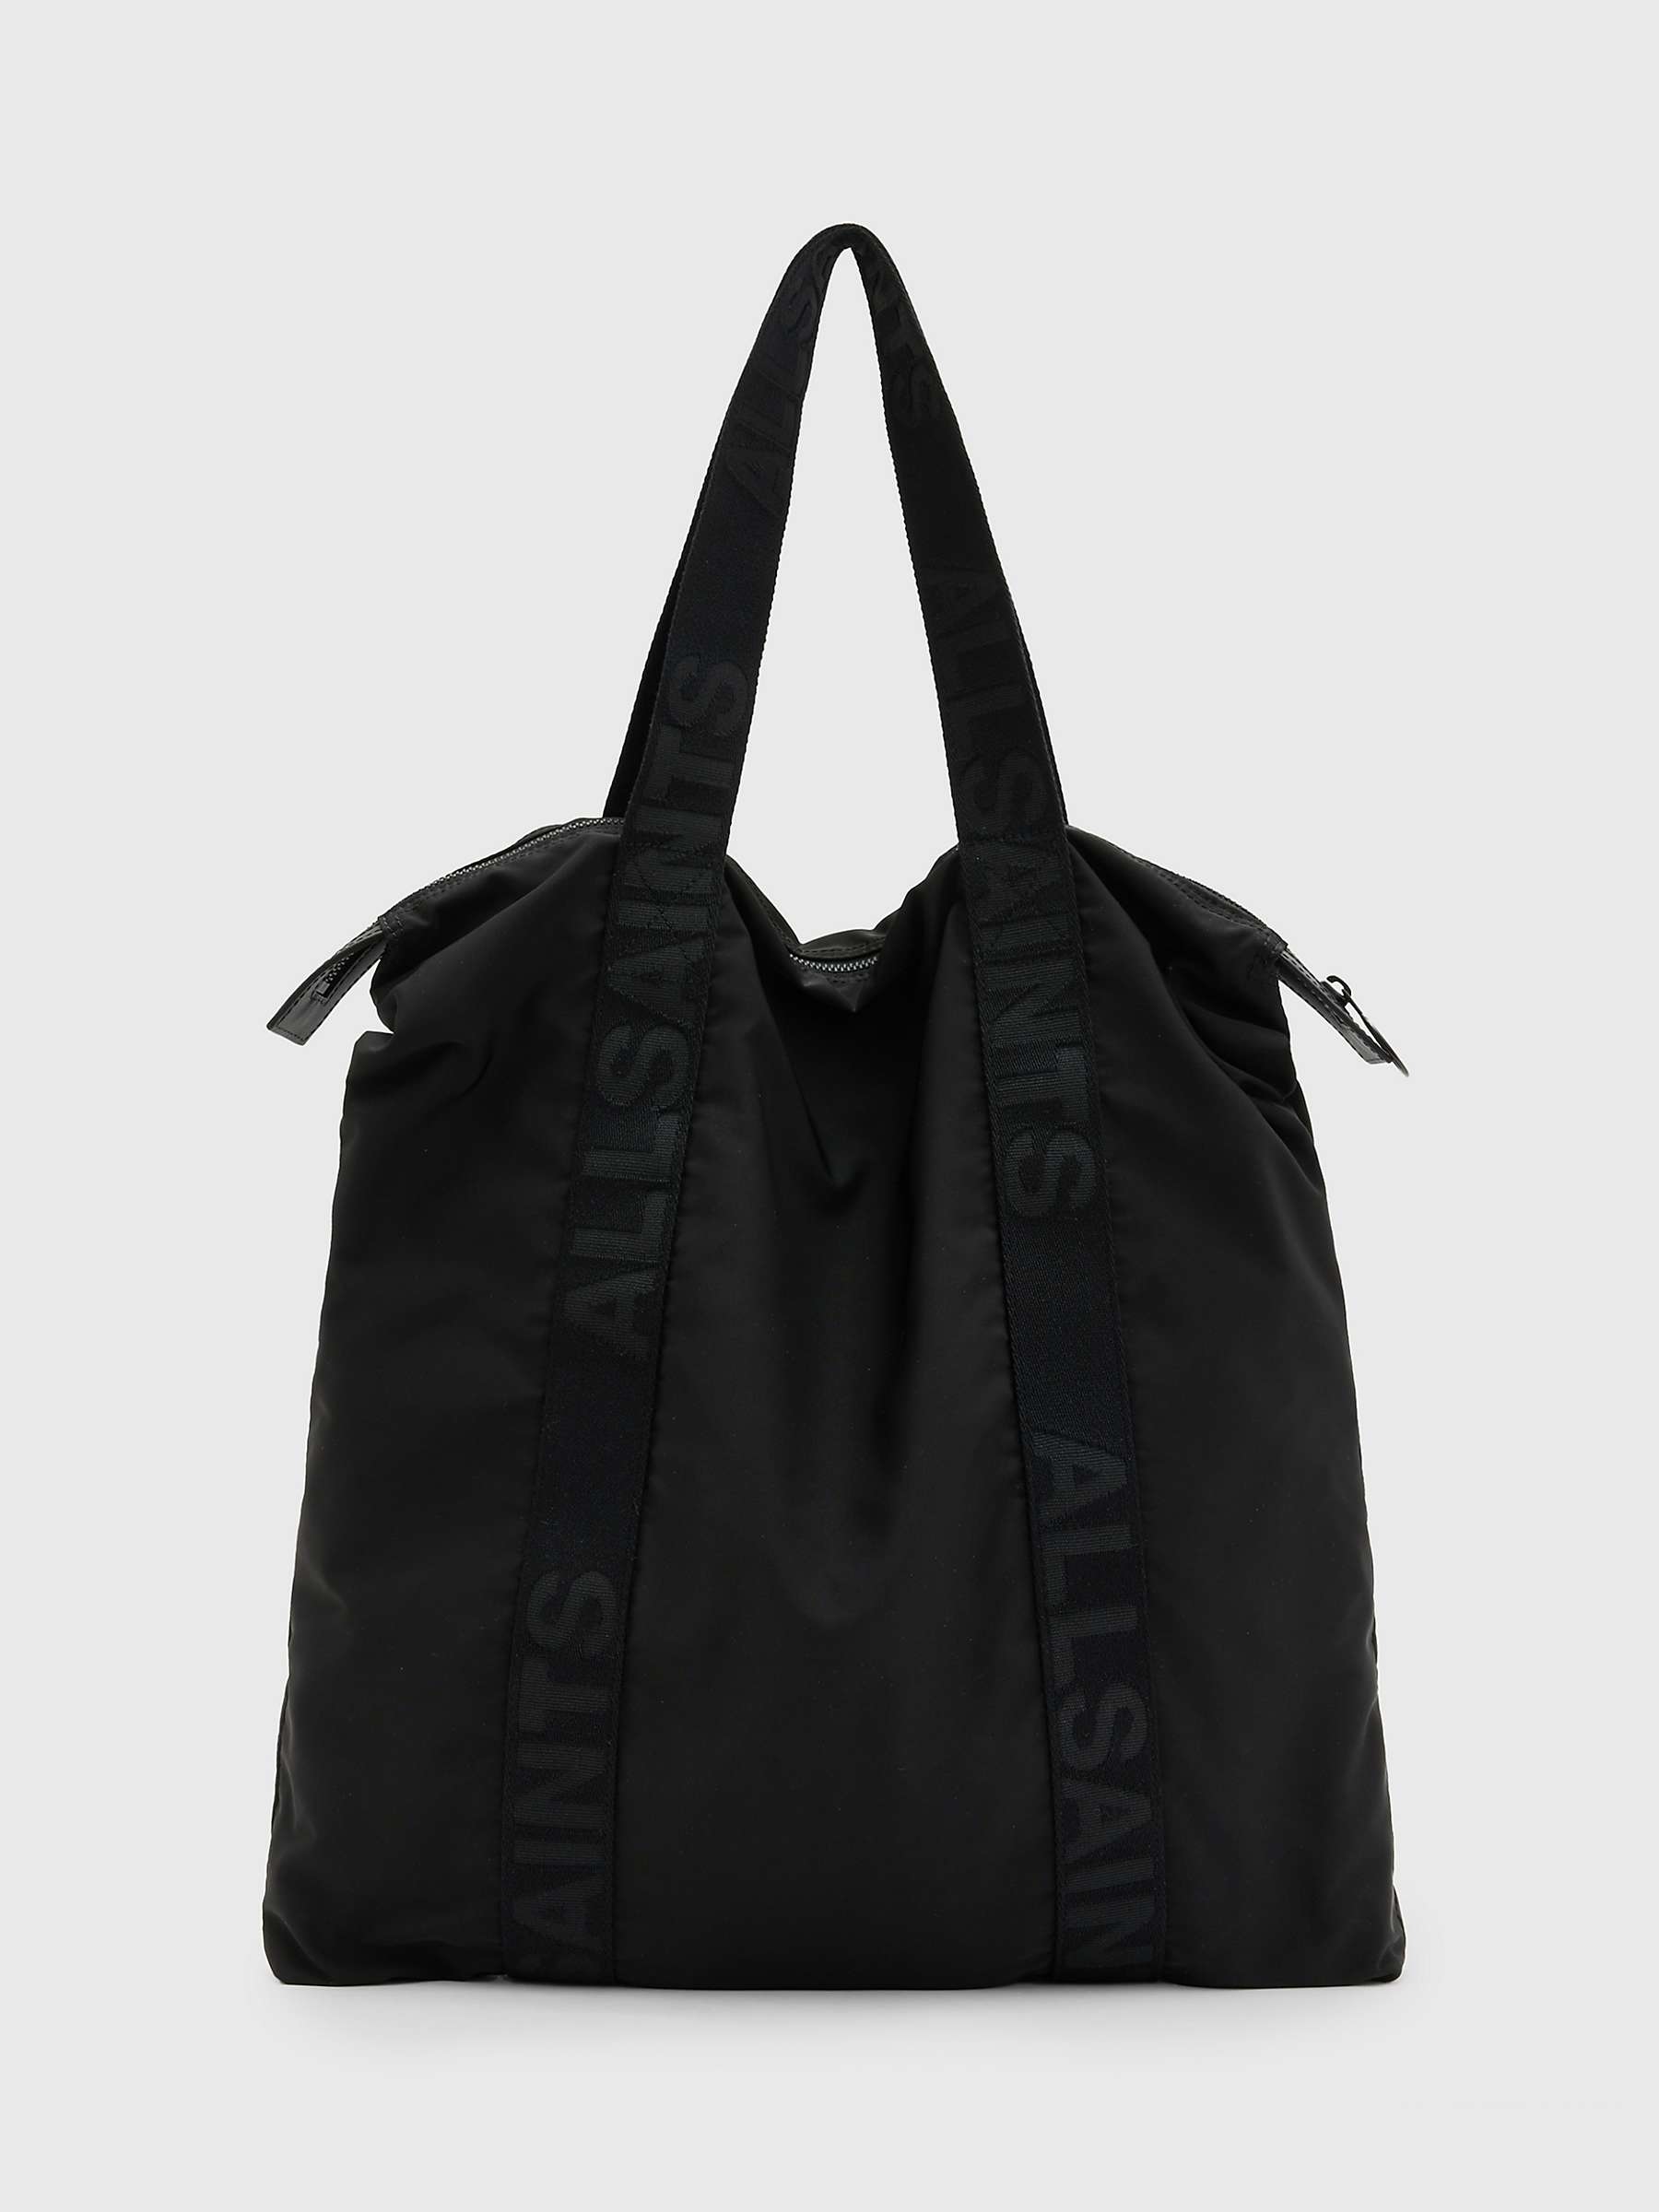 Buy AllSaints Afan Tote Bag, Black Online at johnlewis.com